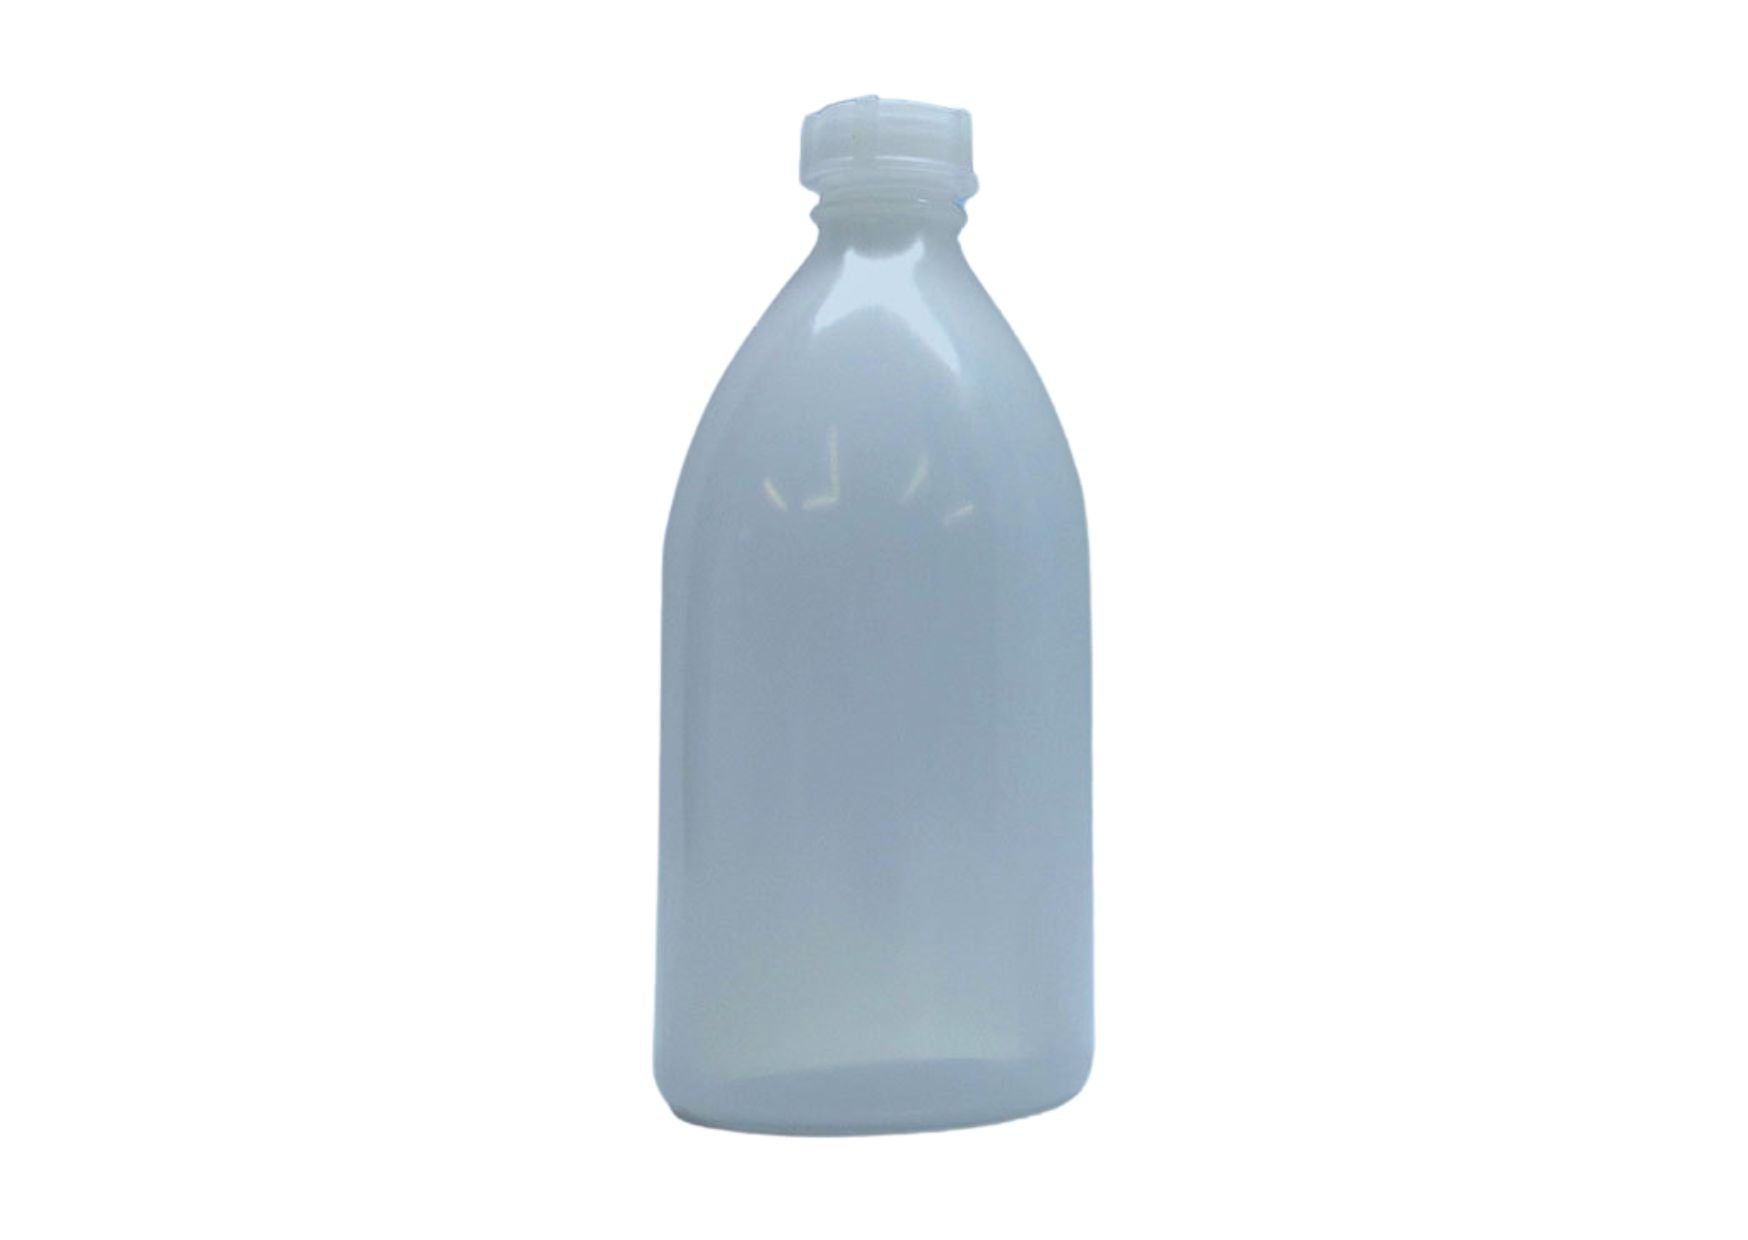 Empty spray bottle with spray attachment, 500 ml bottle